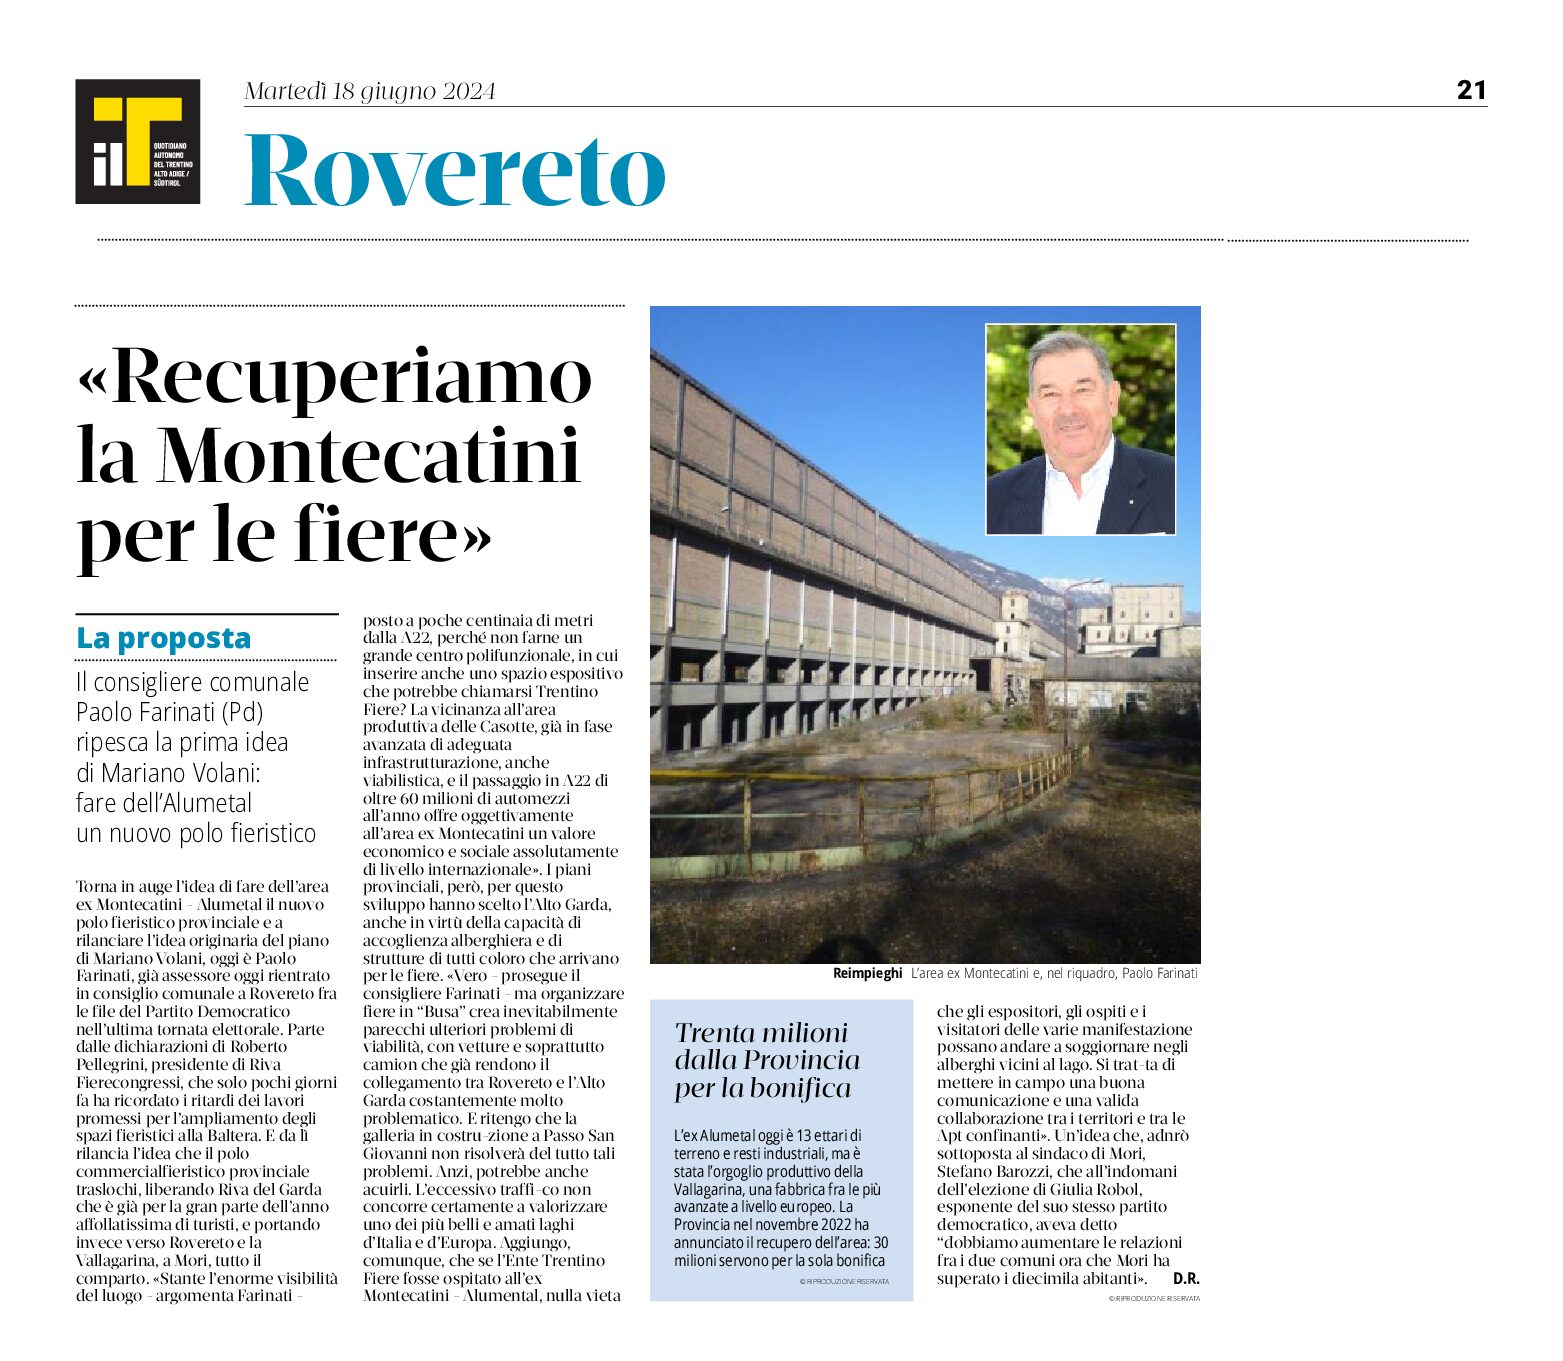 Rovereto, Alumetal: “recuperiamo la Montecatini per le fiere”